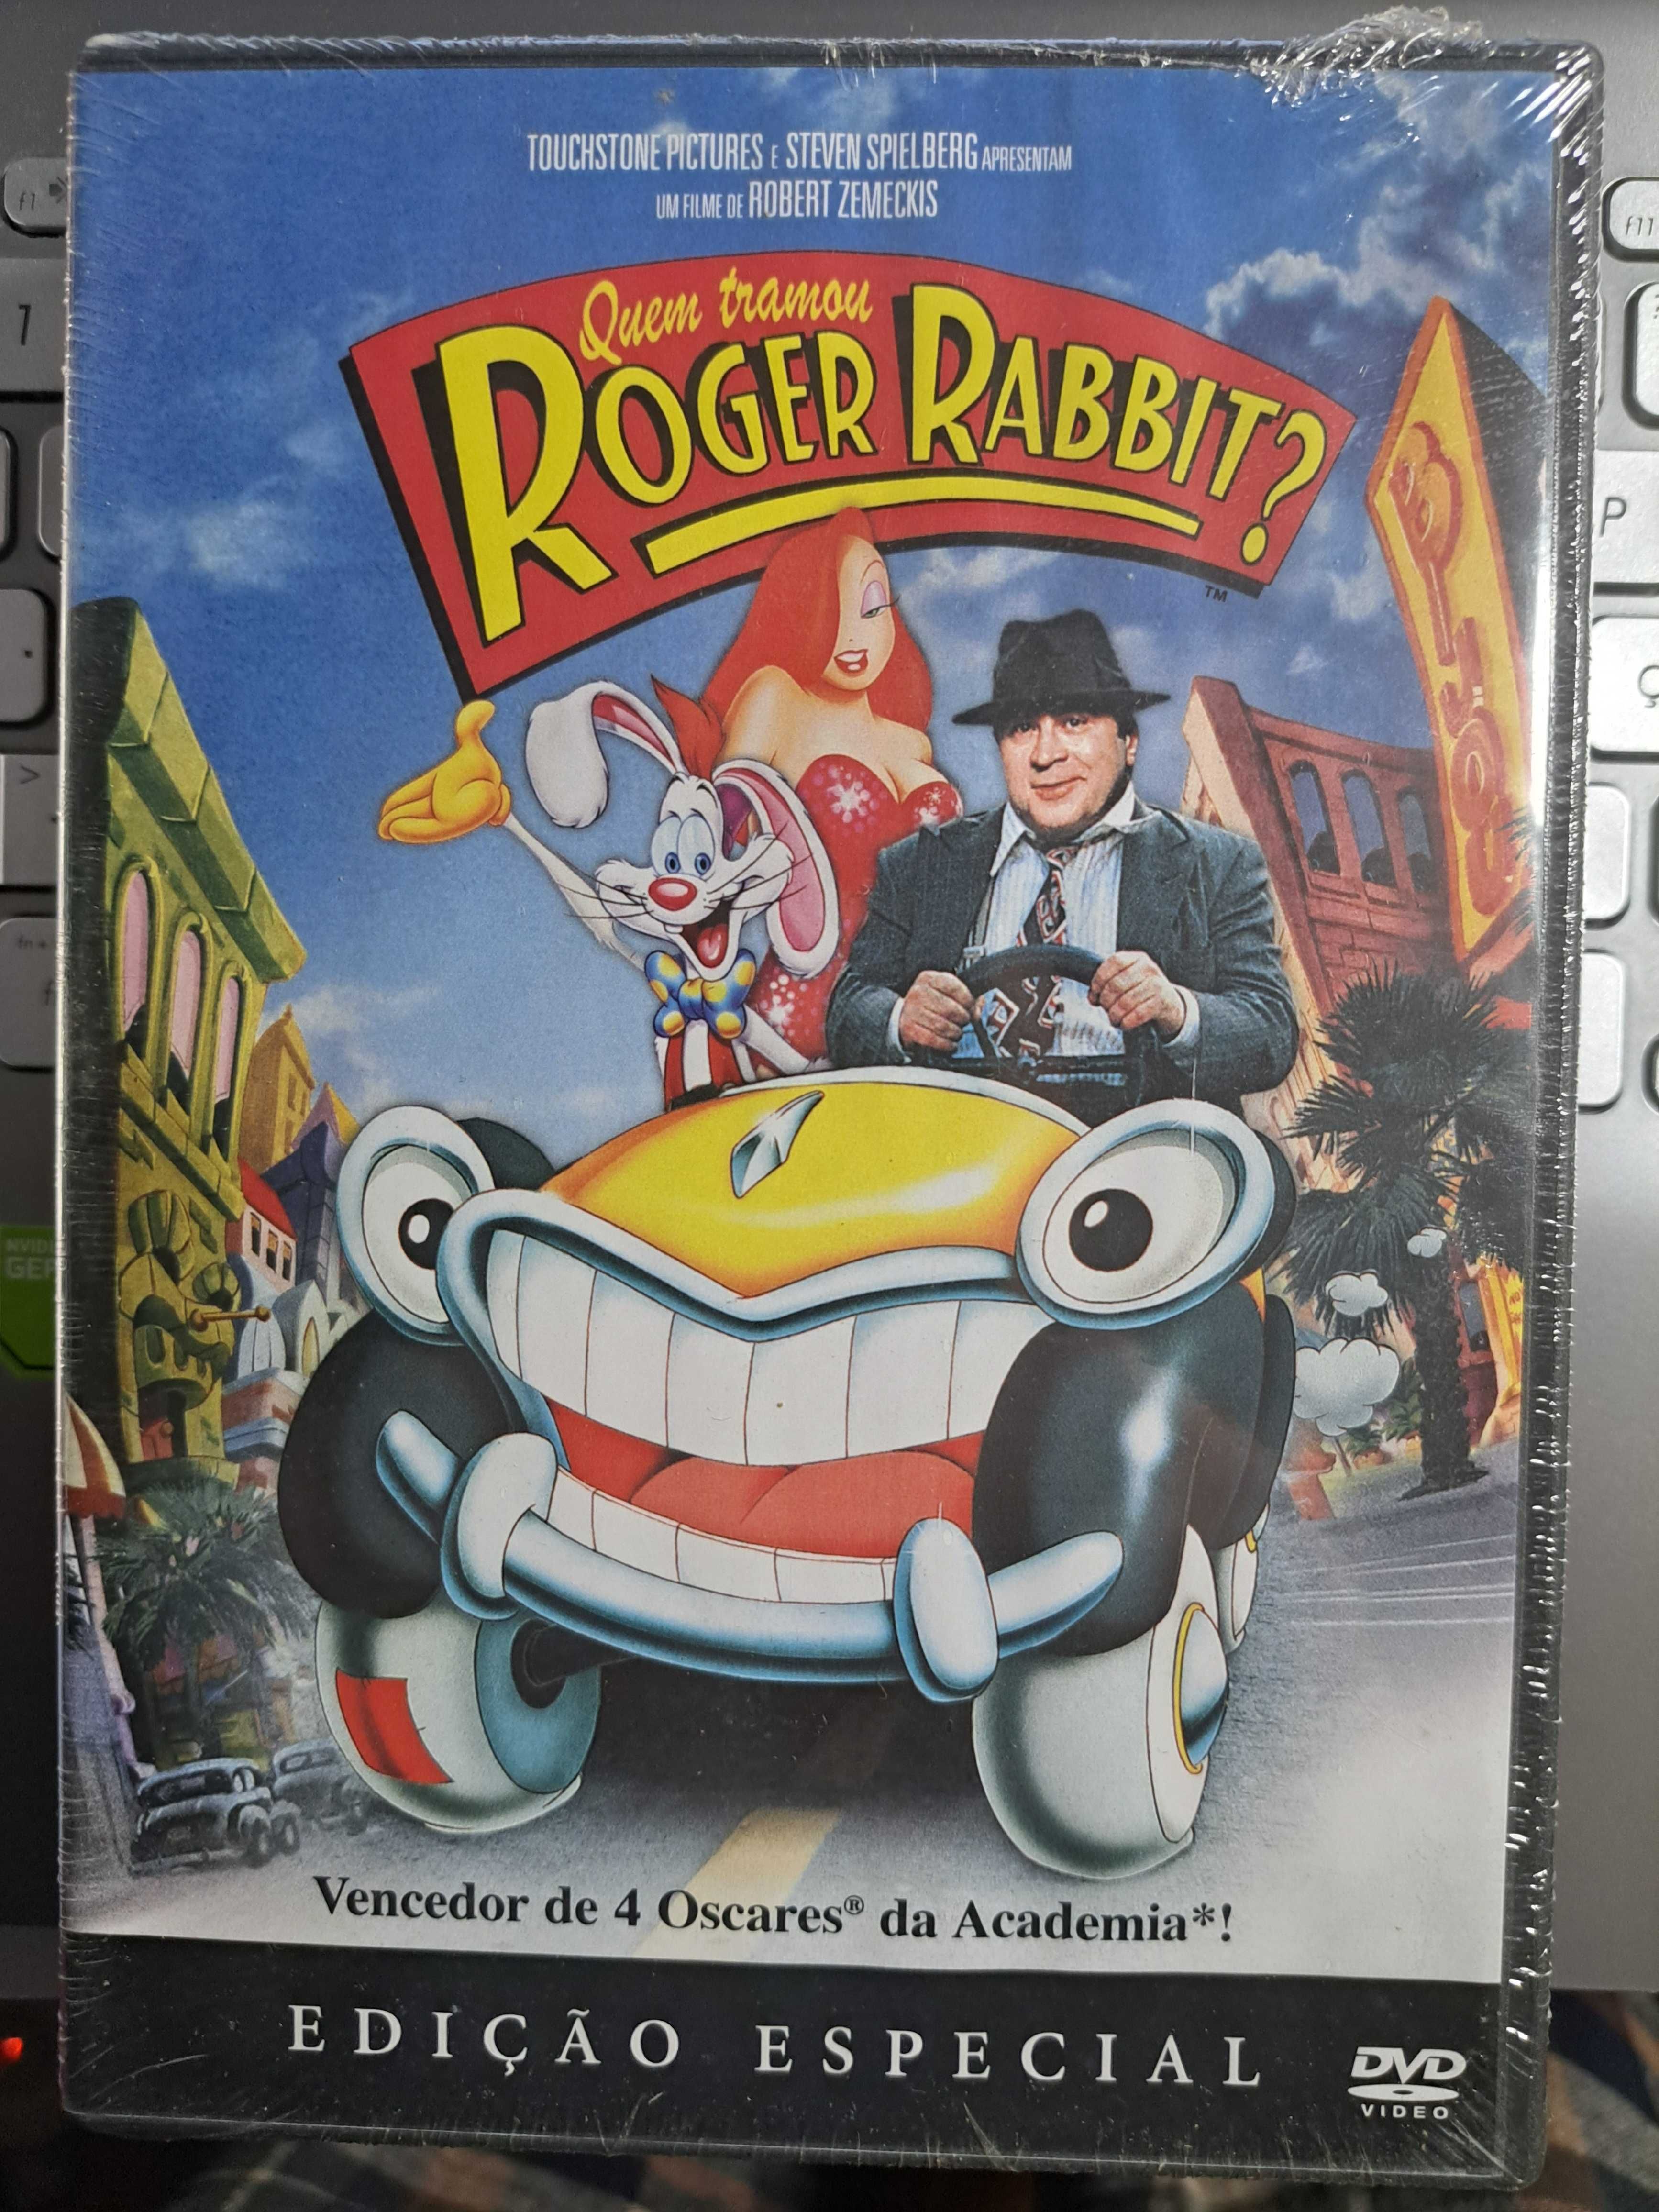 Roger Rabbit - ed. especial